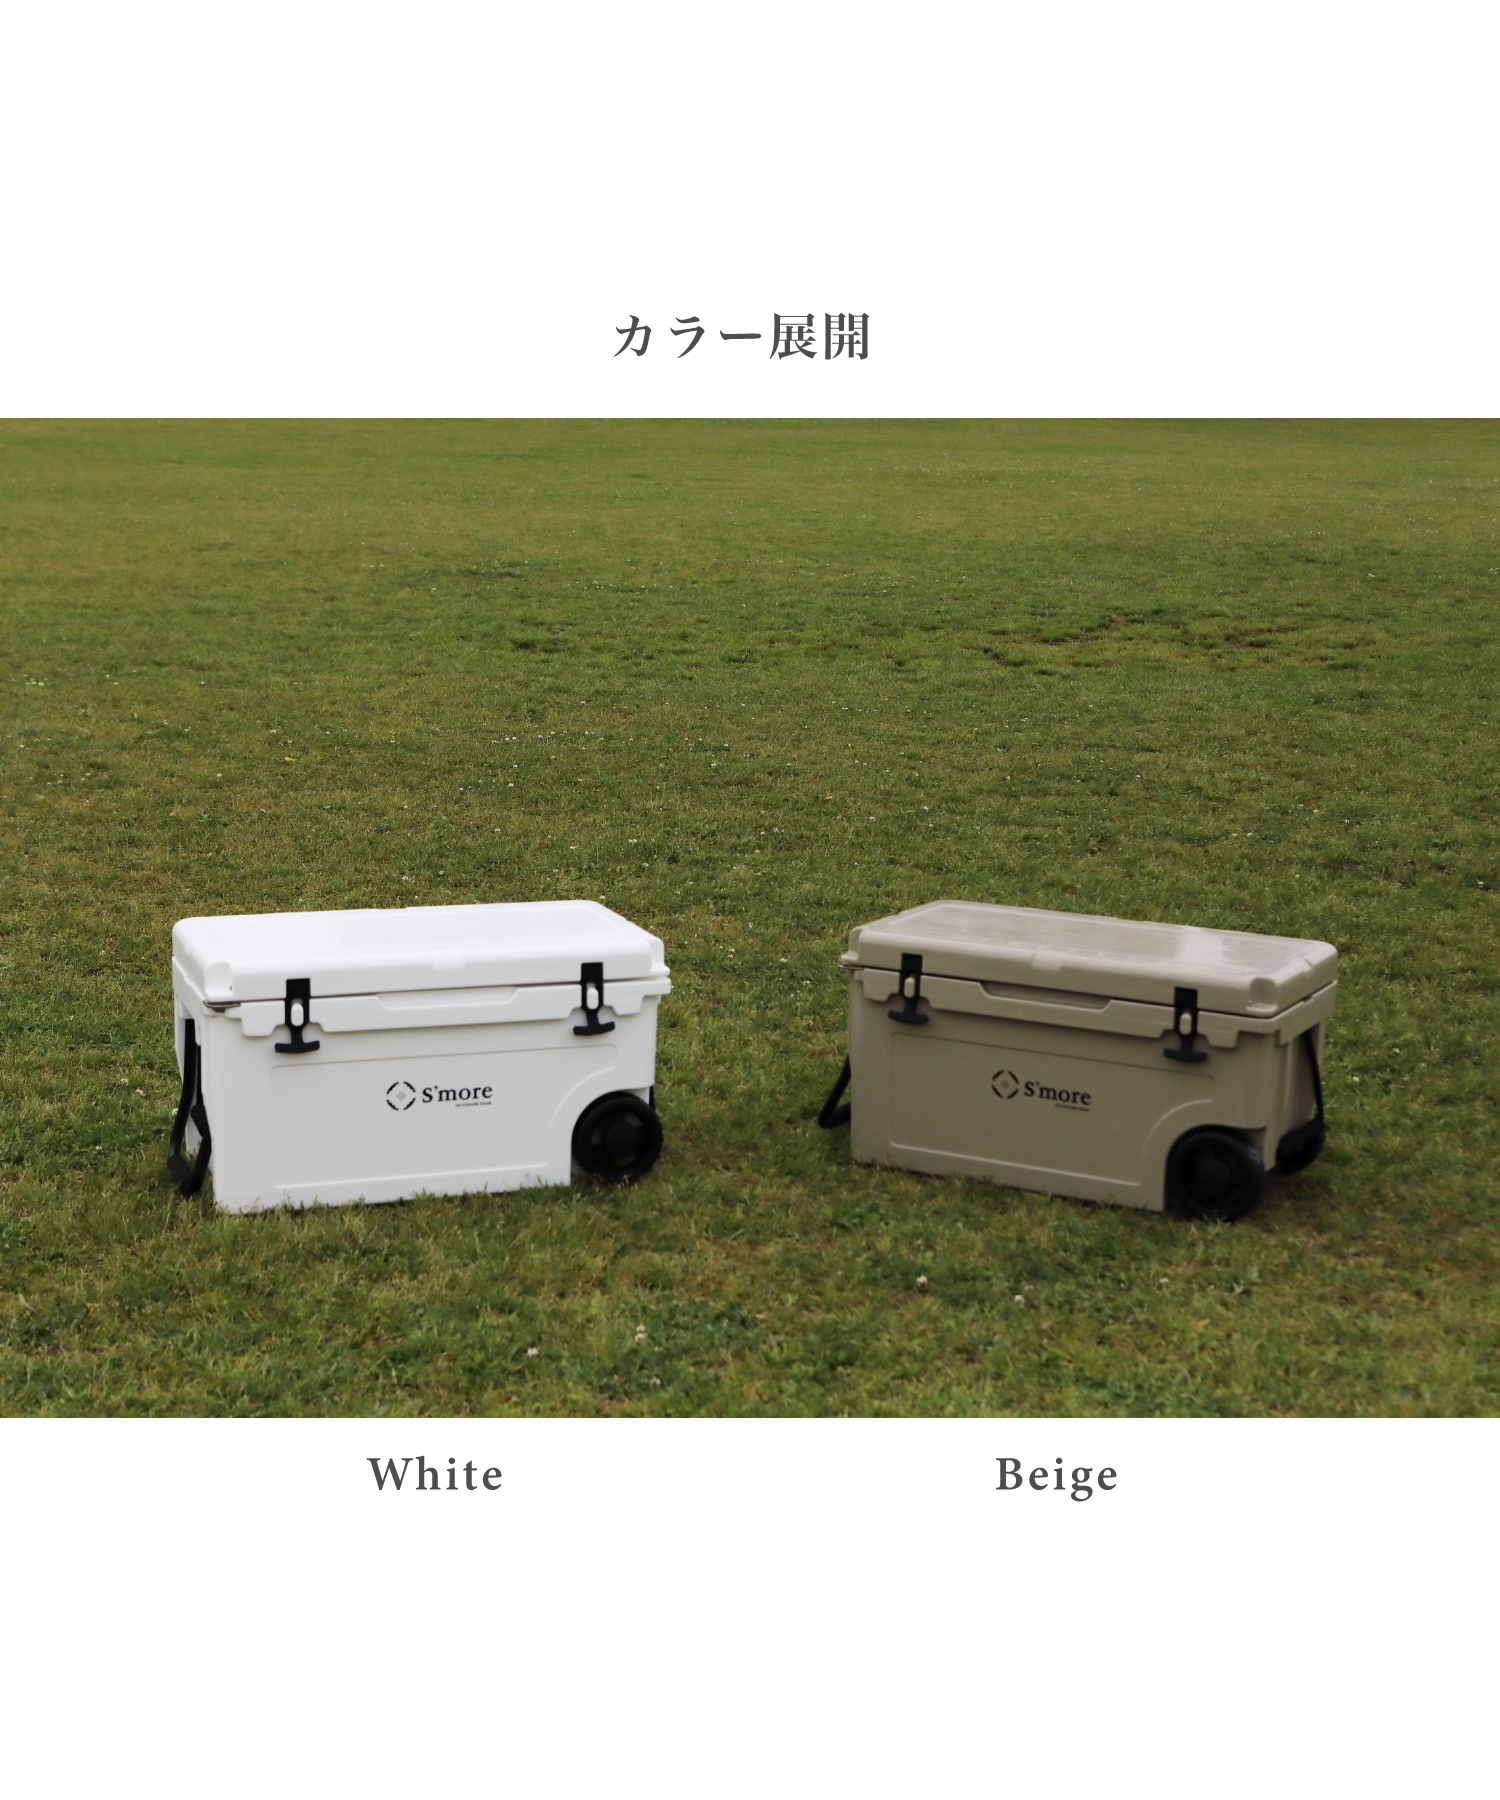 スモア スモア タイヤ付きクーラーボックス（ホワイト／カーキ）Becool cooler box 55